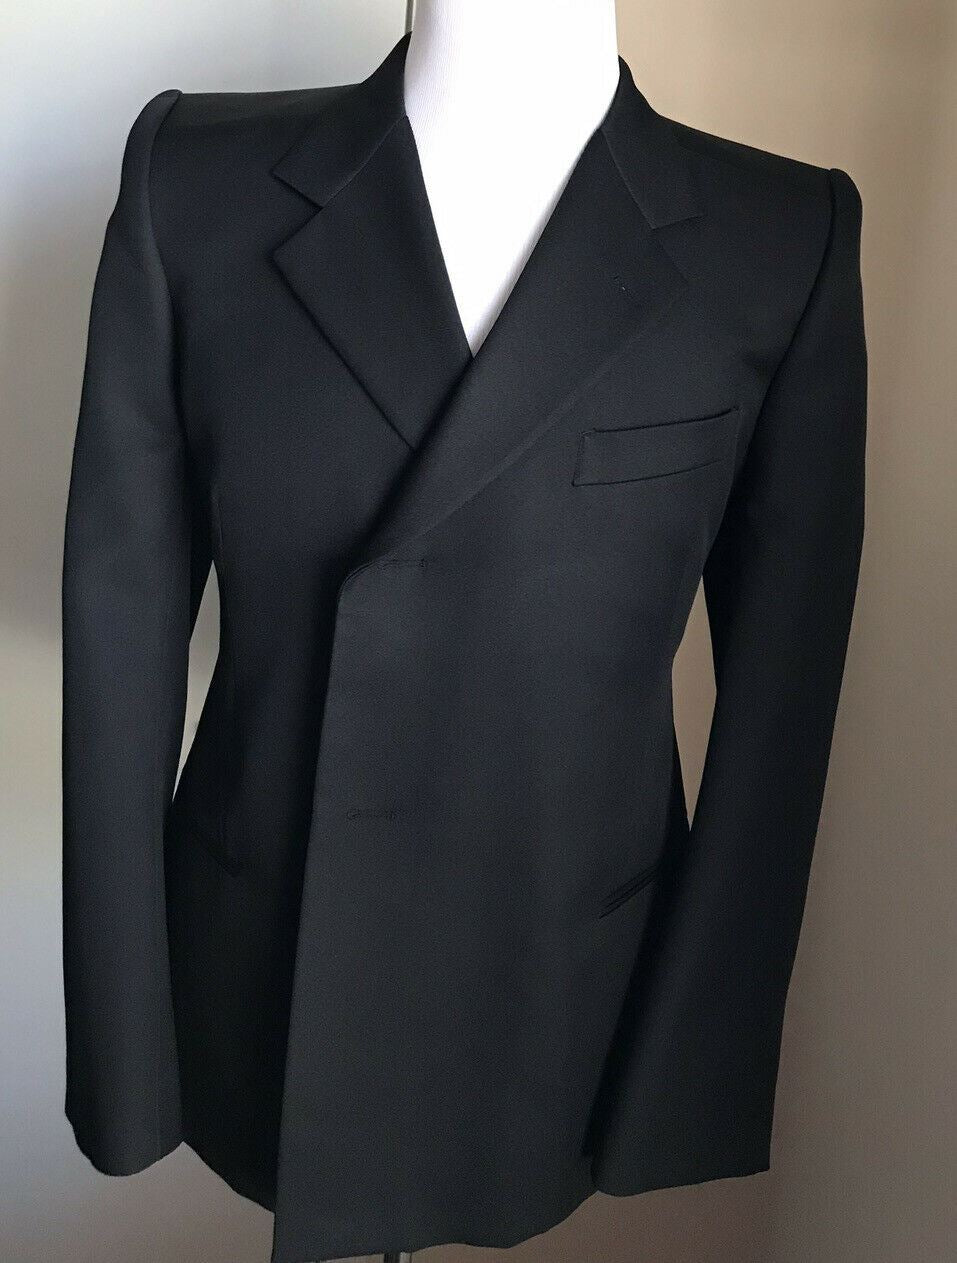 NWT $2050 Balenciaga Men slim fit Sport Coat Jacket Blazer Black 42 US/52 Eu Ita